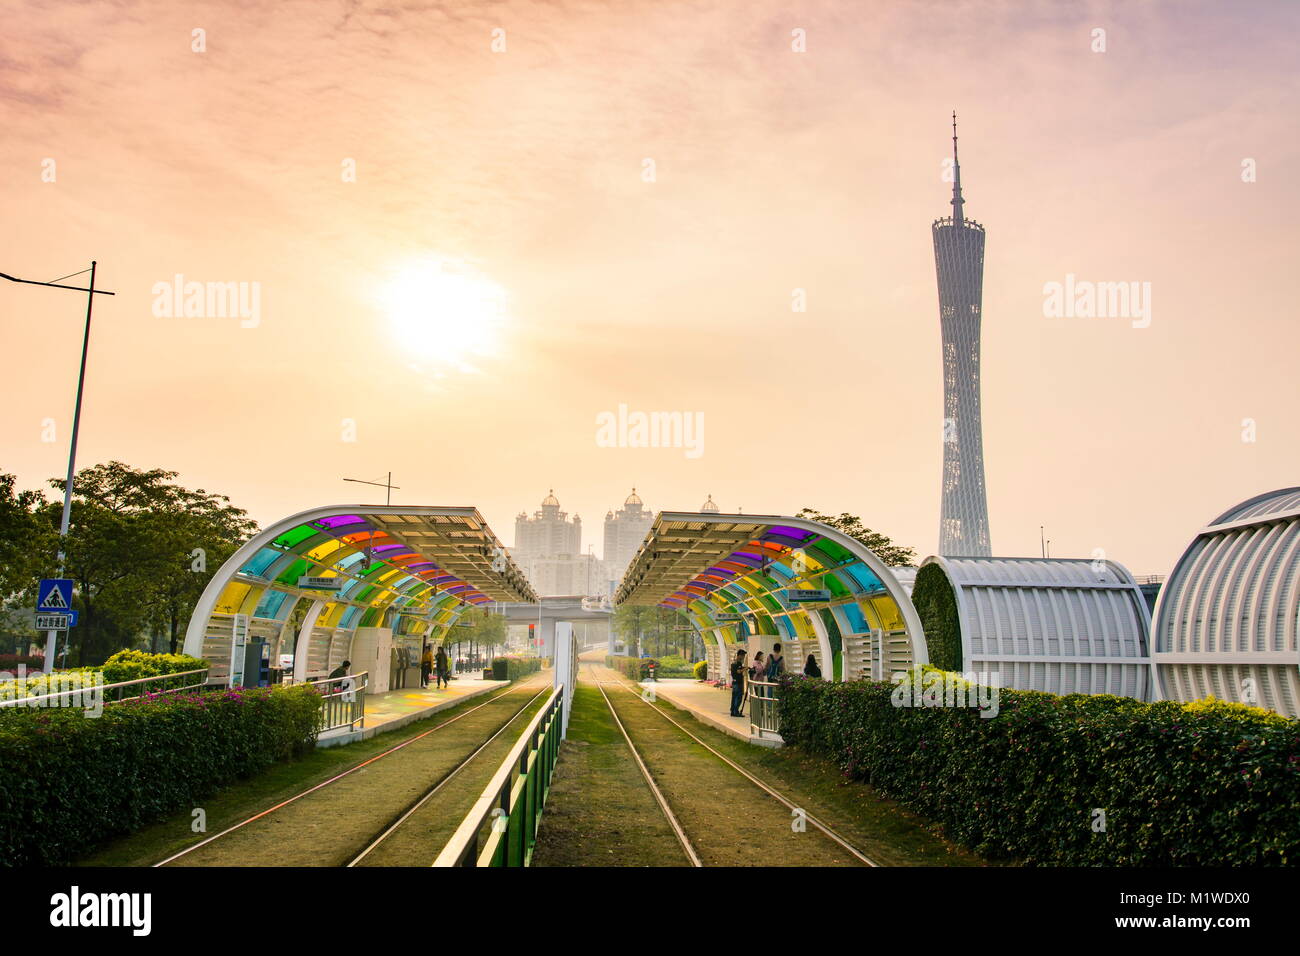 GUANGZHOU, CHINE - 3 janvier 2018 : la station de tramway de la ville de Guangzhou avec rail track couverte d'herbe et Canton tower dans l'arrière-plan Banque D'Images